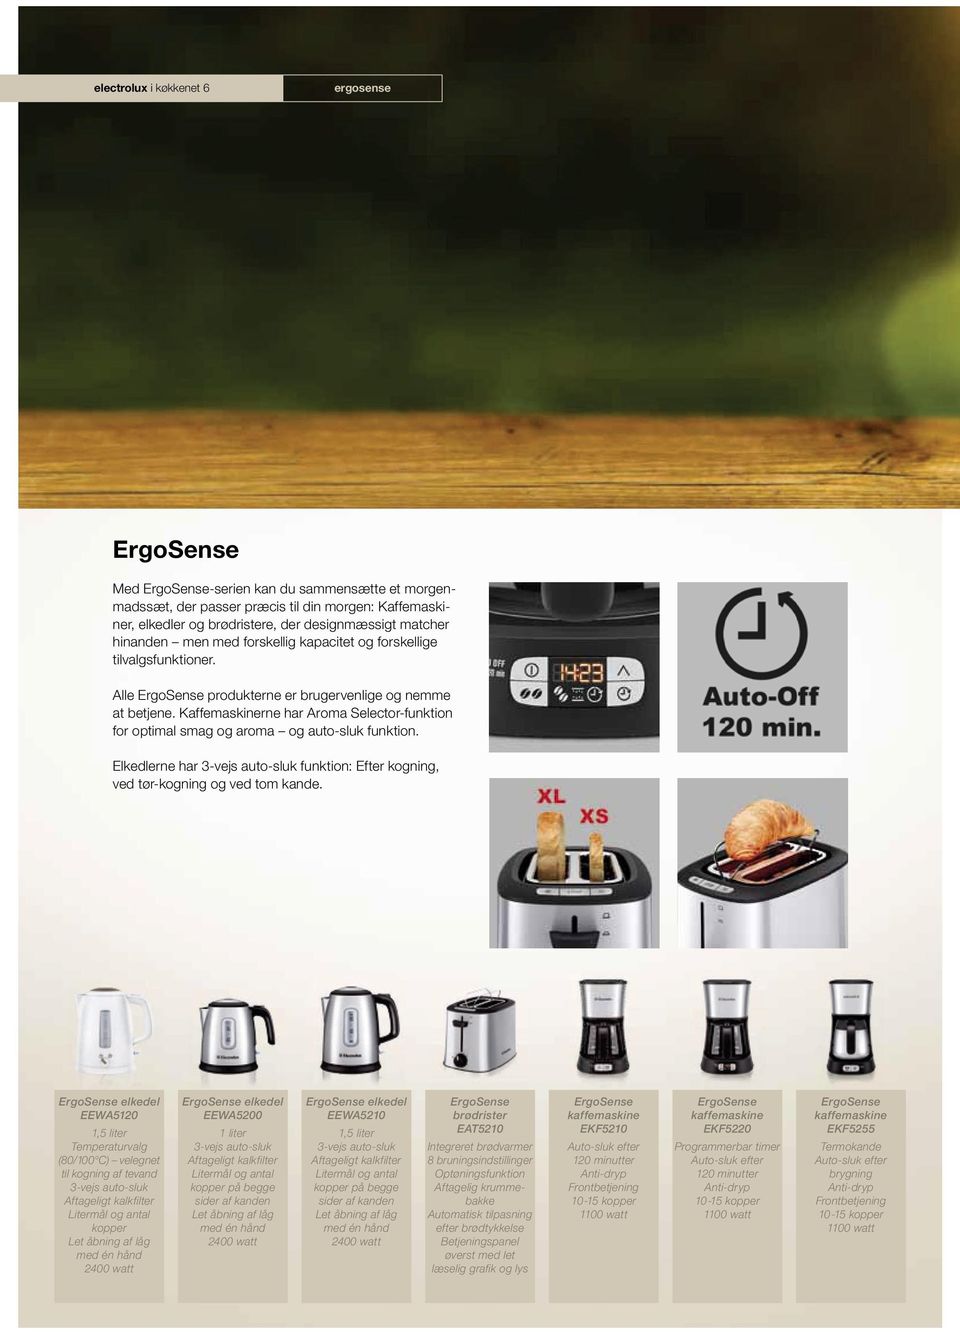 Kaffemaskinerne har Aroma Selector-funktion for optimal smag og aroma og auto-sluk funktion. Elkedlerne har 3-vejs auto-sluk funktion: Efter kogning, ved tør-kogning og ved tom kande.